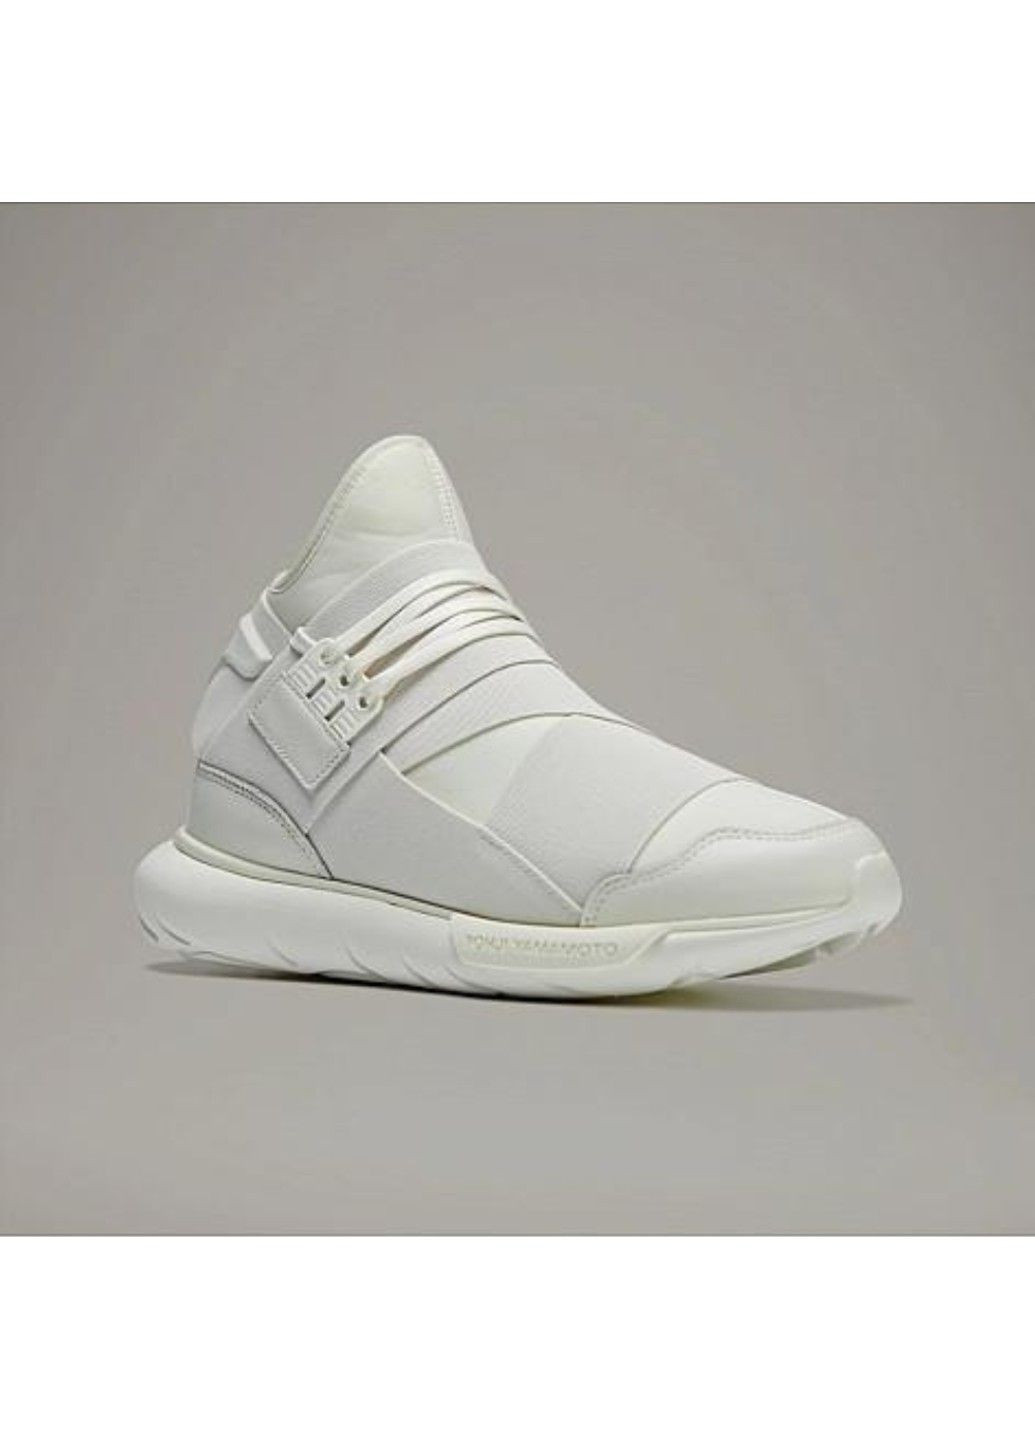 Белые y-3 qasa white if5504 adidas